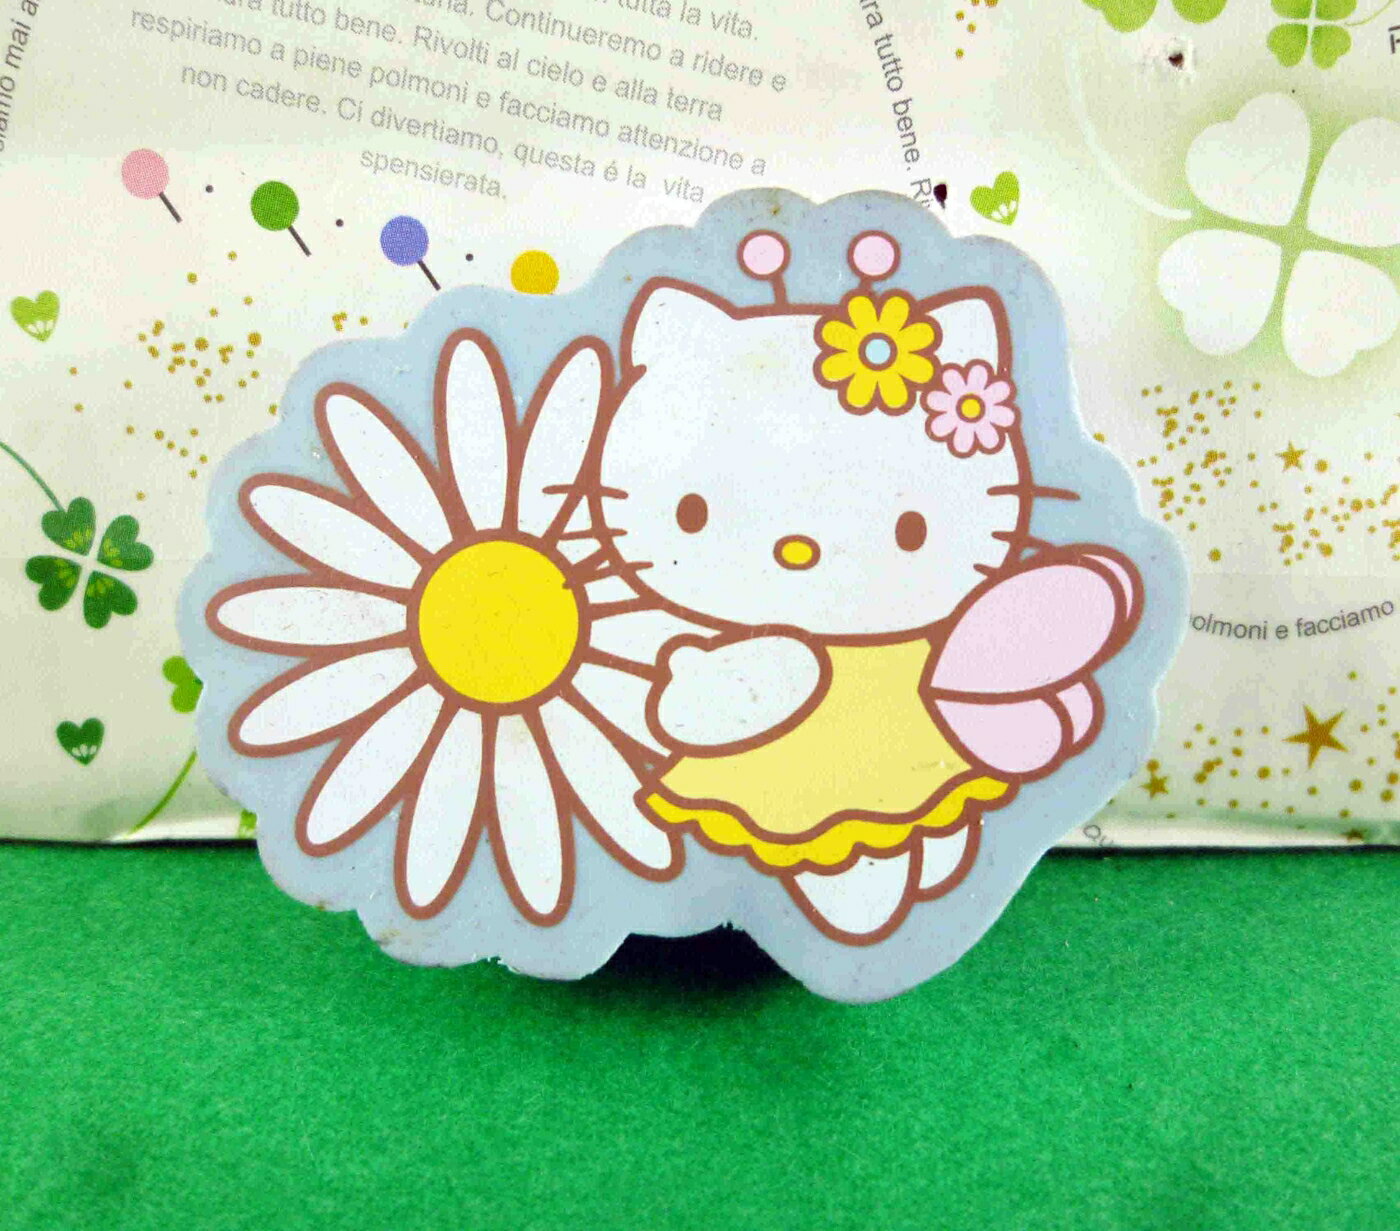 【震撼精品百貨】Hello Kitty 凱蒂貓 造型橡皮擦-藍小菊花 震撼日式精品百貨